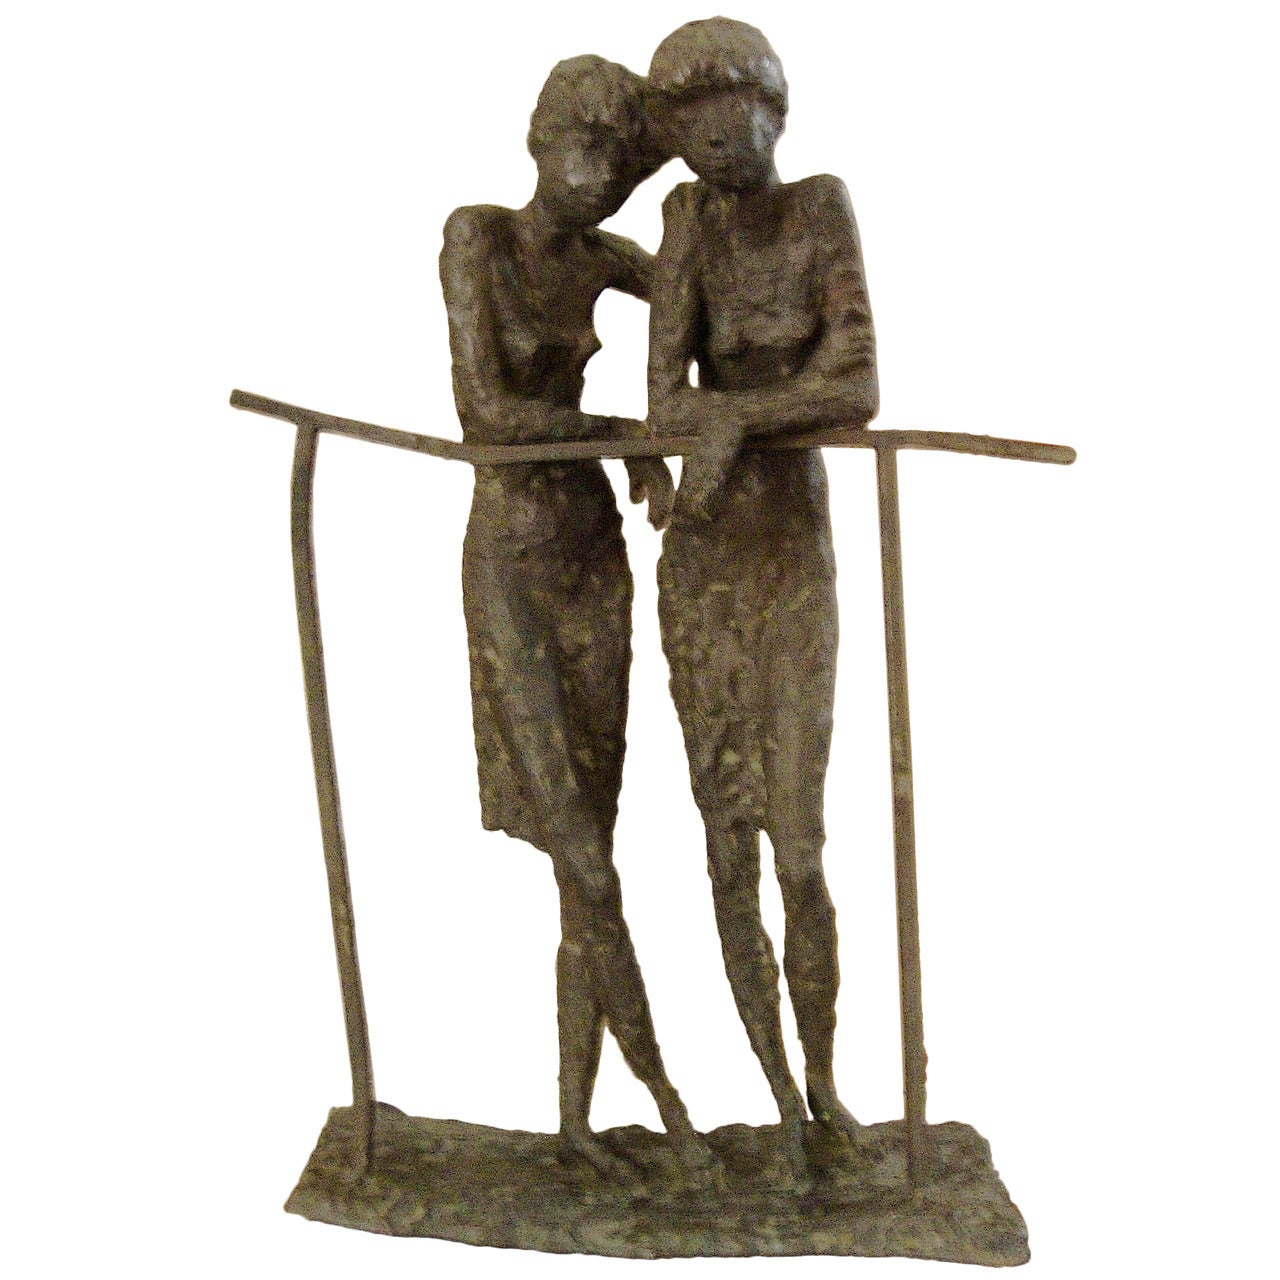 Sculpture de deux femmes à la manière d'Alberto Giacometti